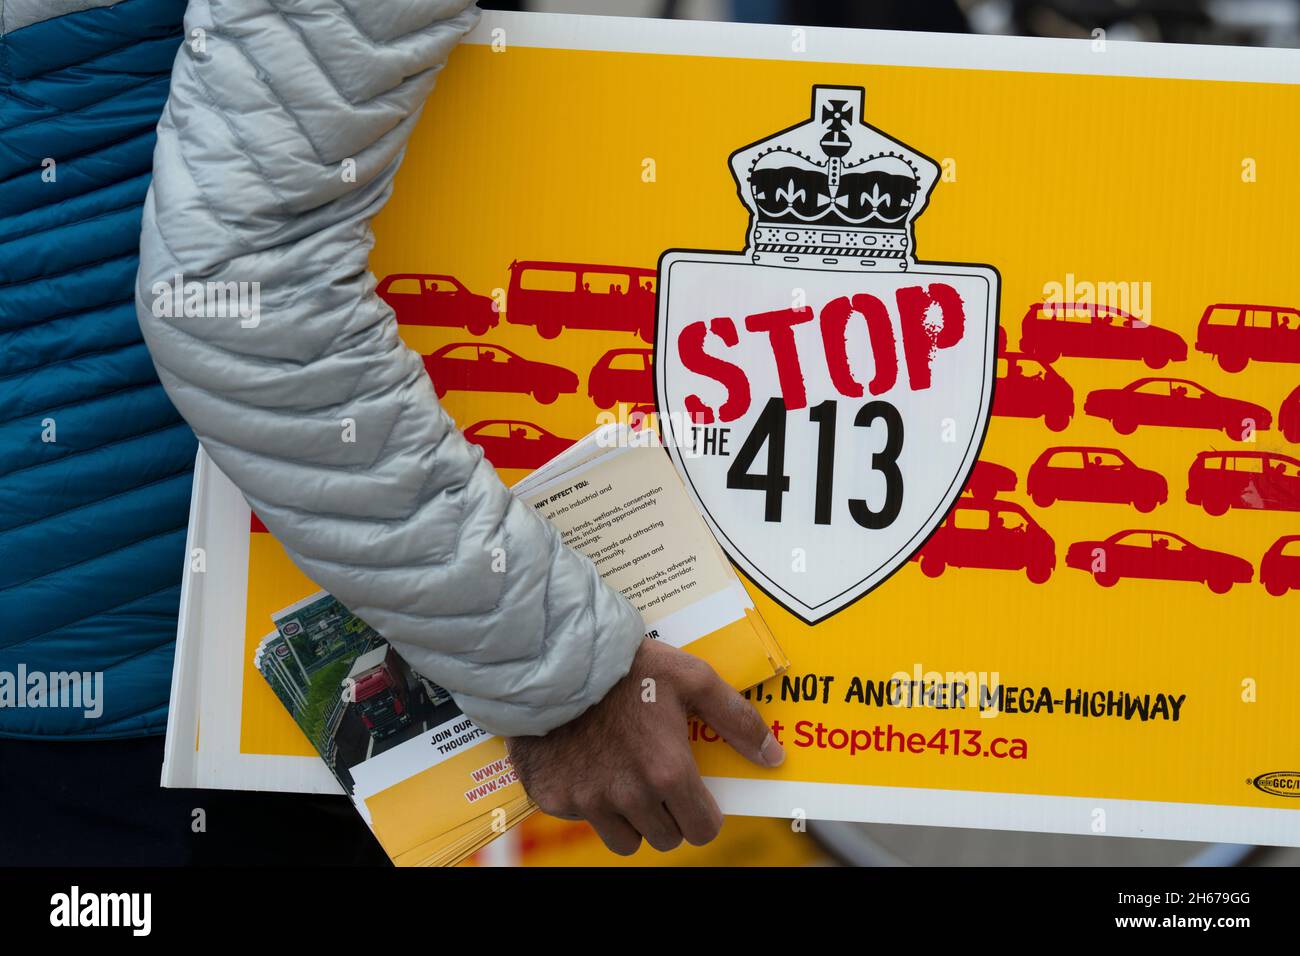 Il Protestor ha un segno per protestare contro la proposta di Ontario Highway 413, Day of Action Stop 413 e salvare la Greenbelt, novembre 13 2021 Foto Stock